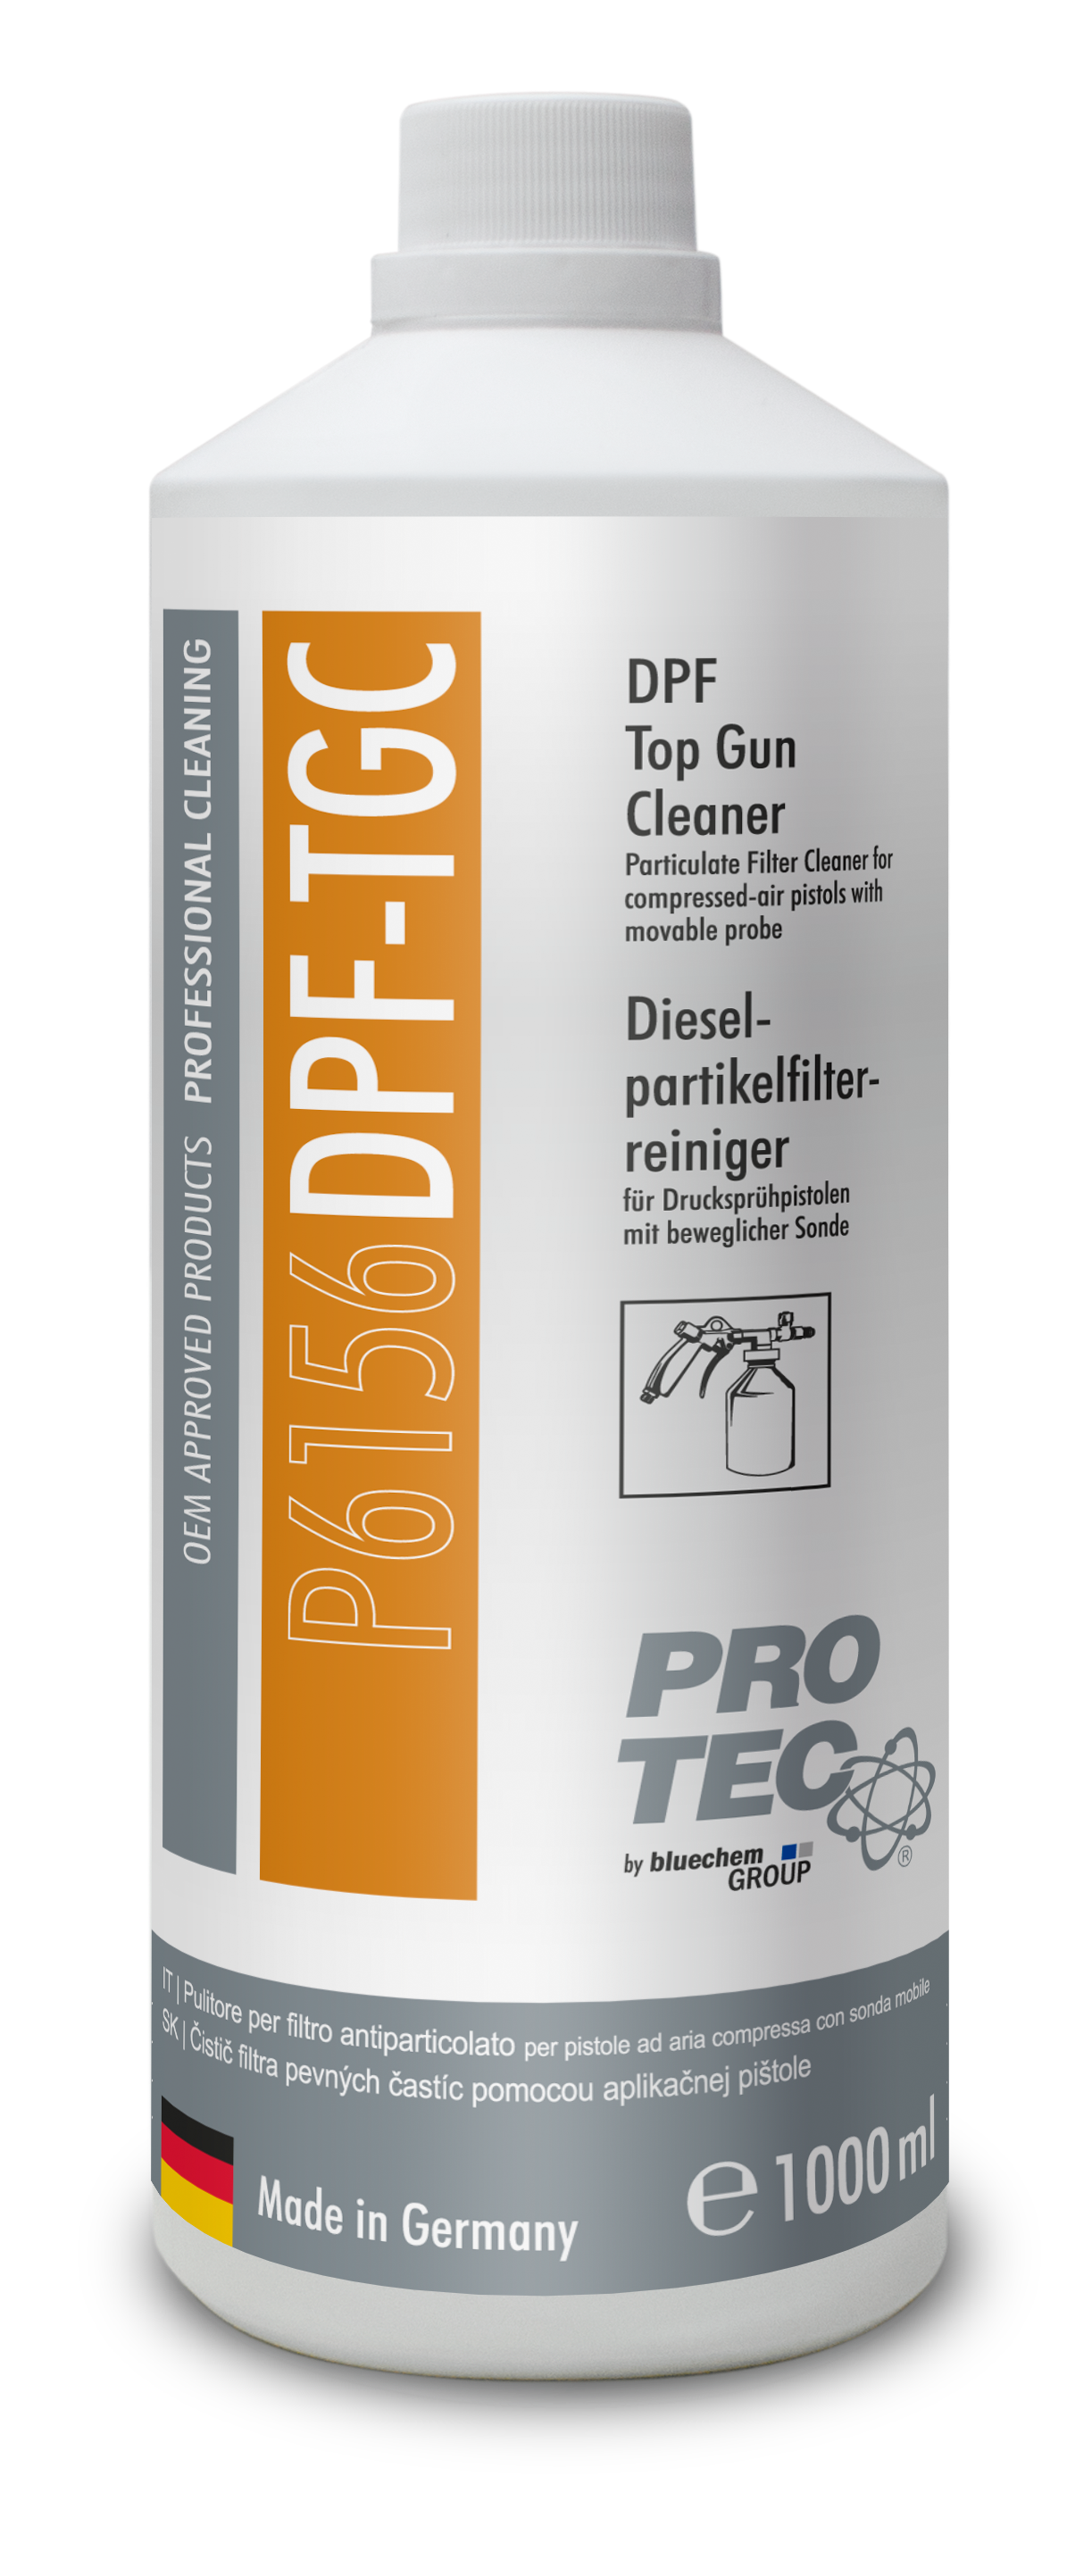 Petrol GPF Cleaner - Benzin Partikelfilter Reiniger für modernste